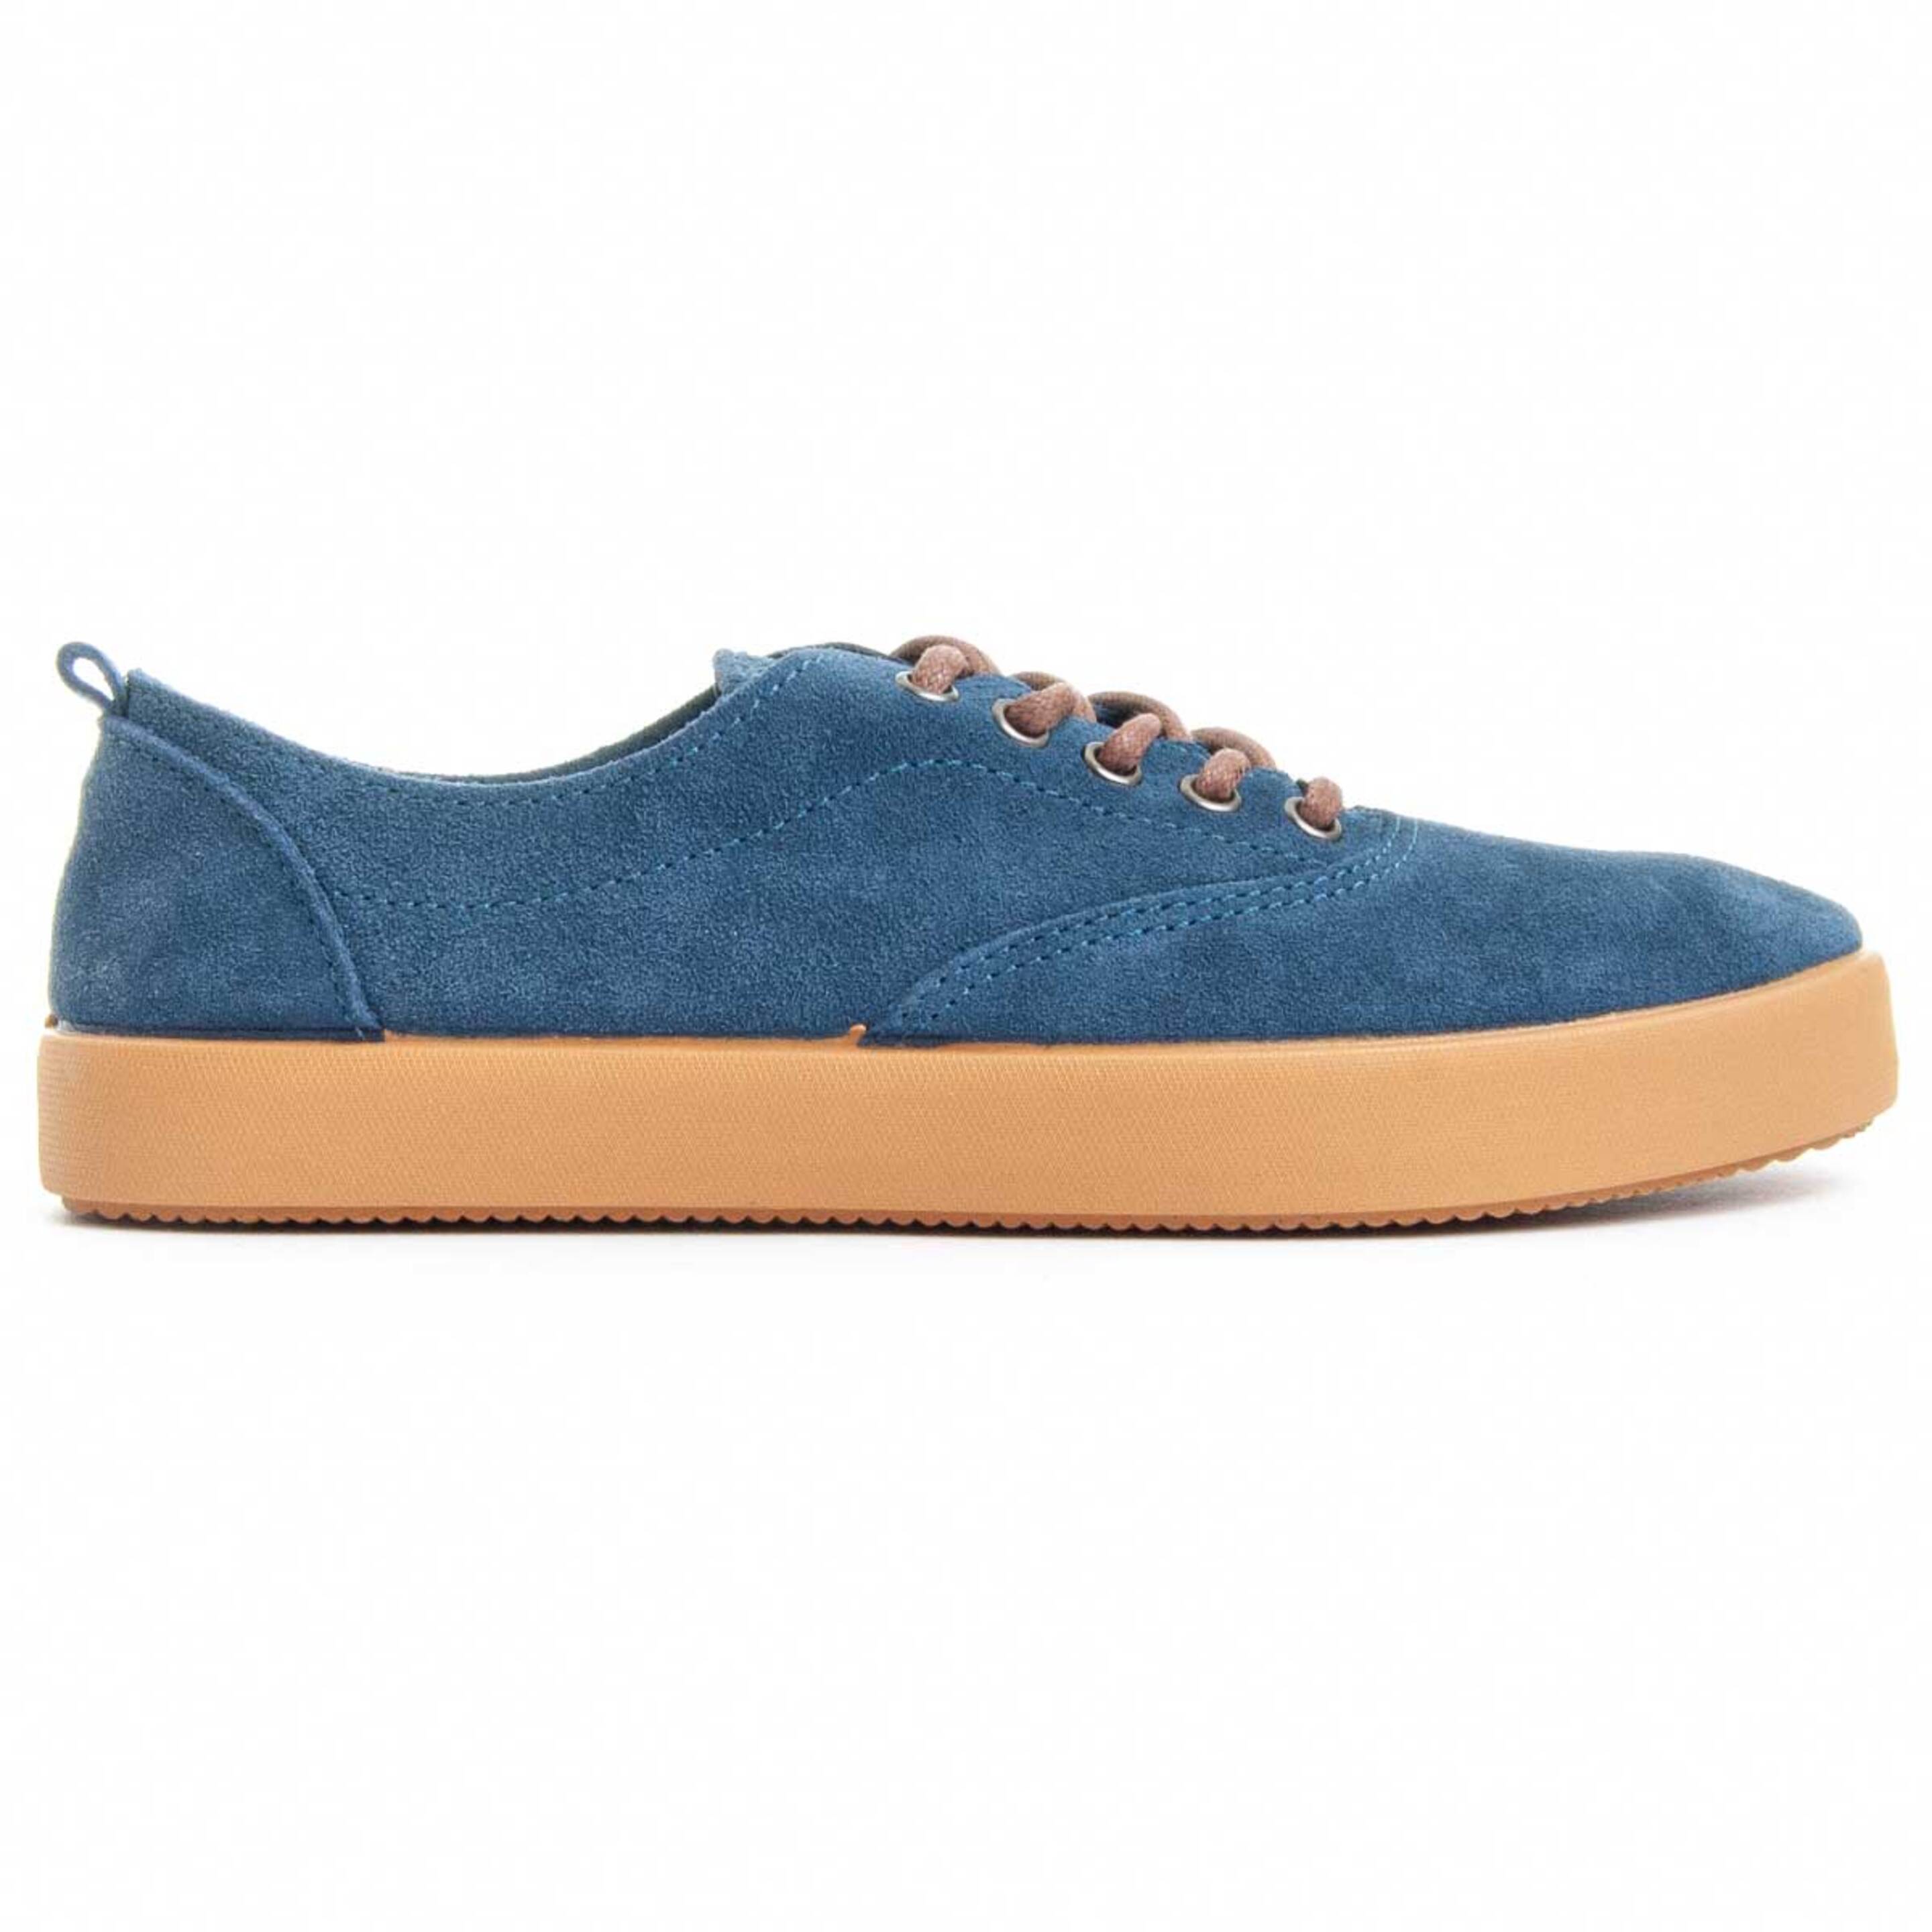 Sneaker Comoda Montevita Serram - azul - 